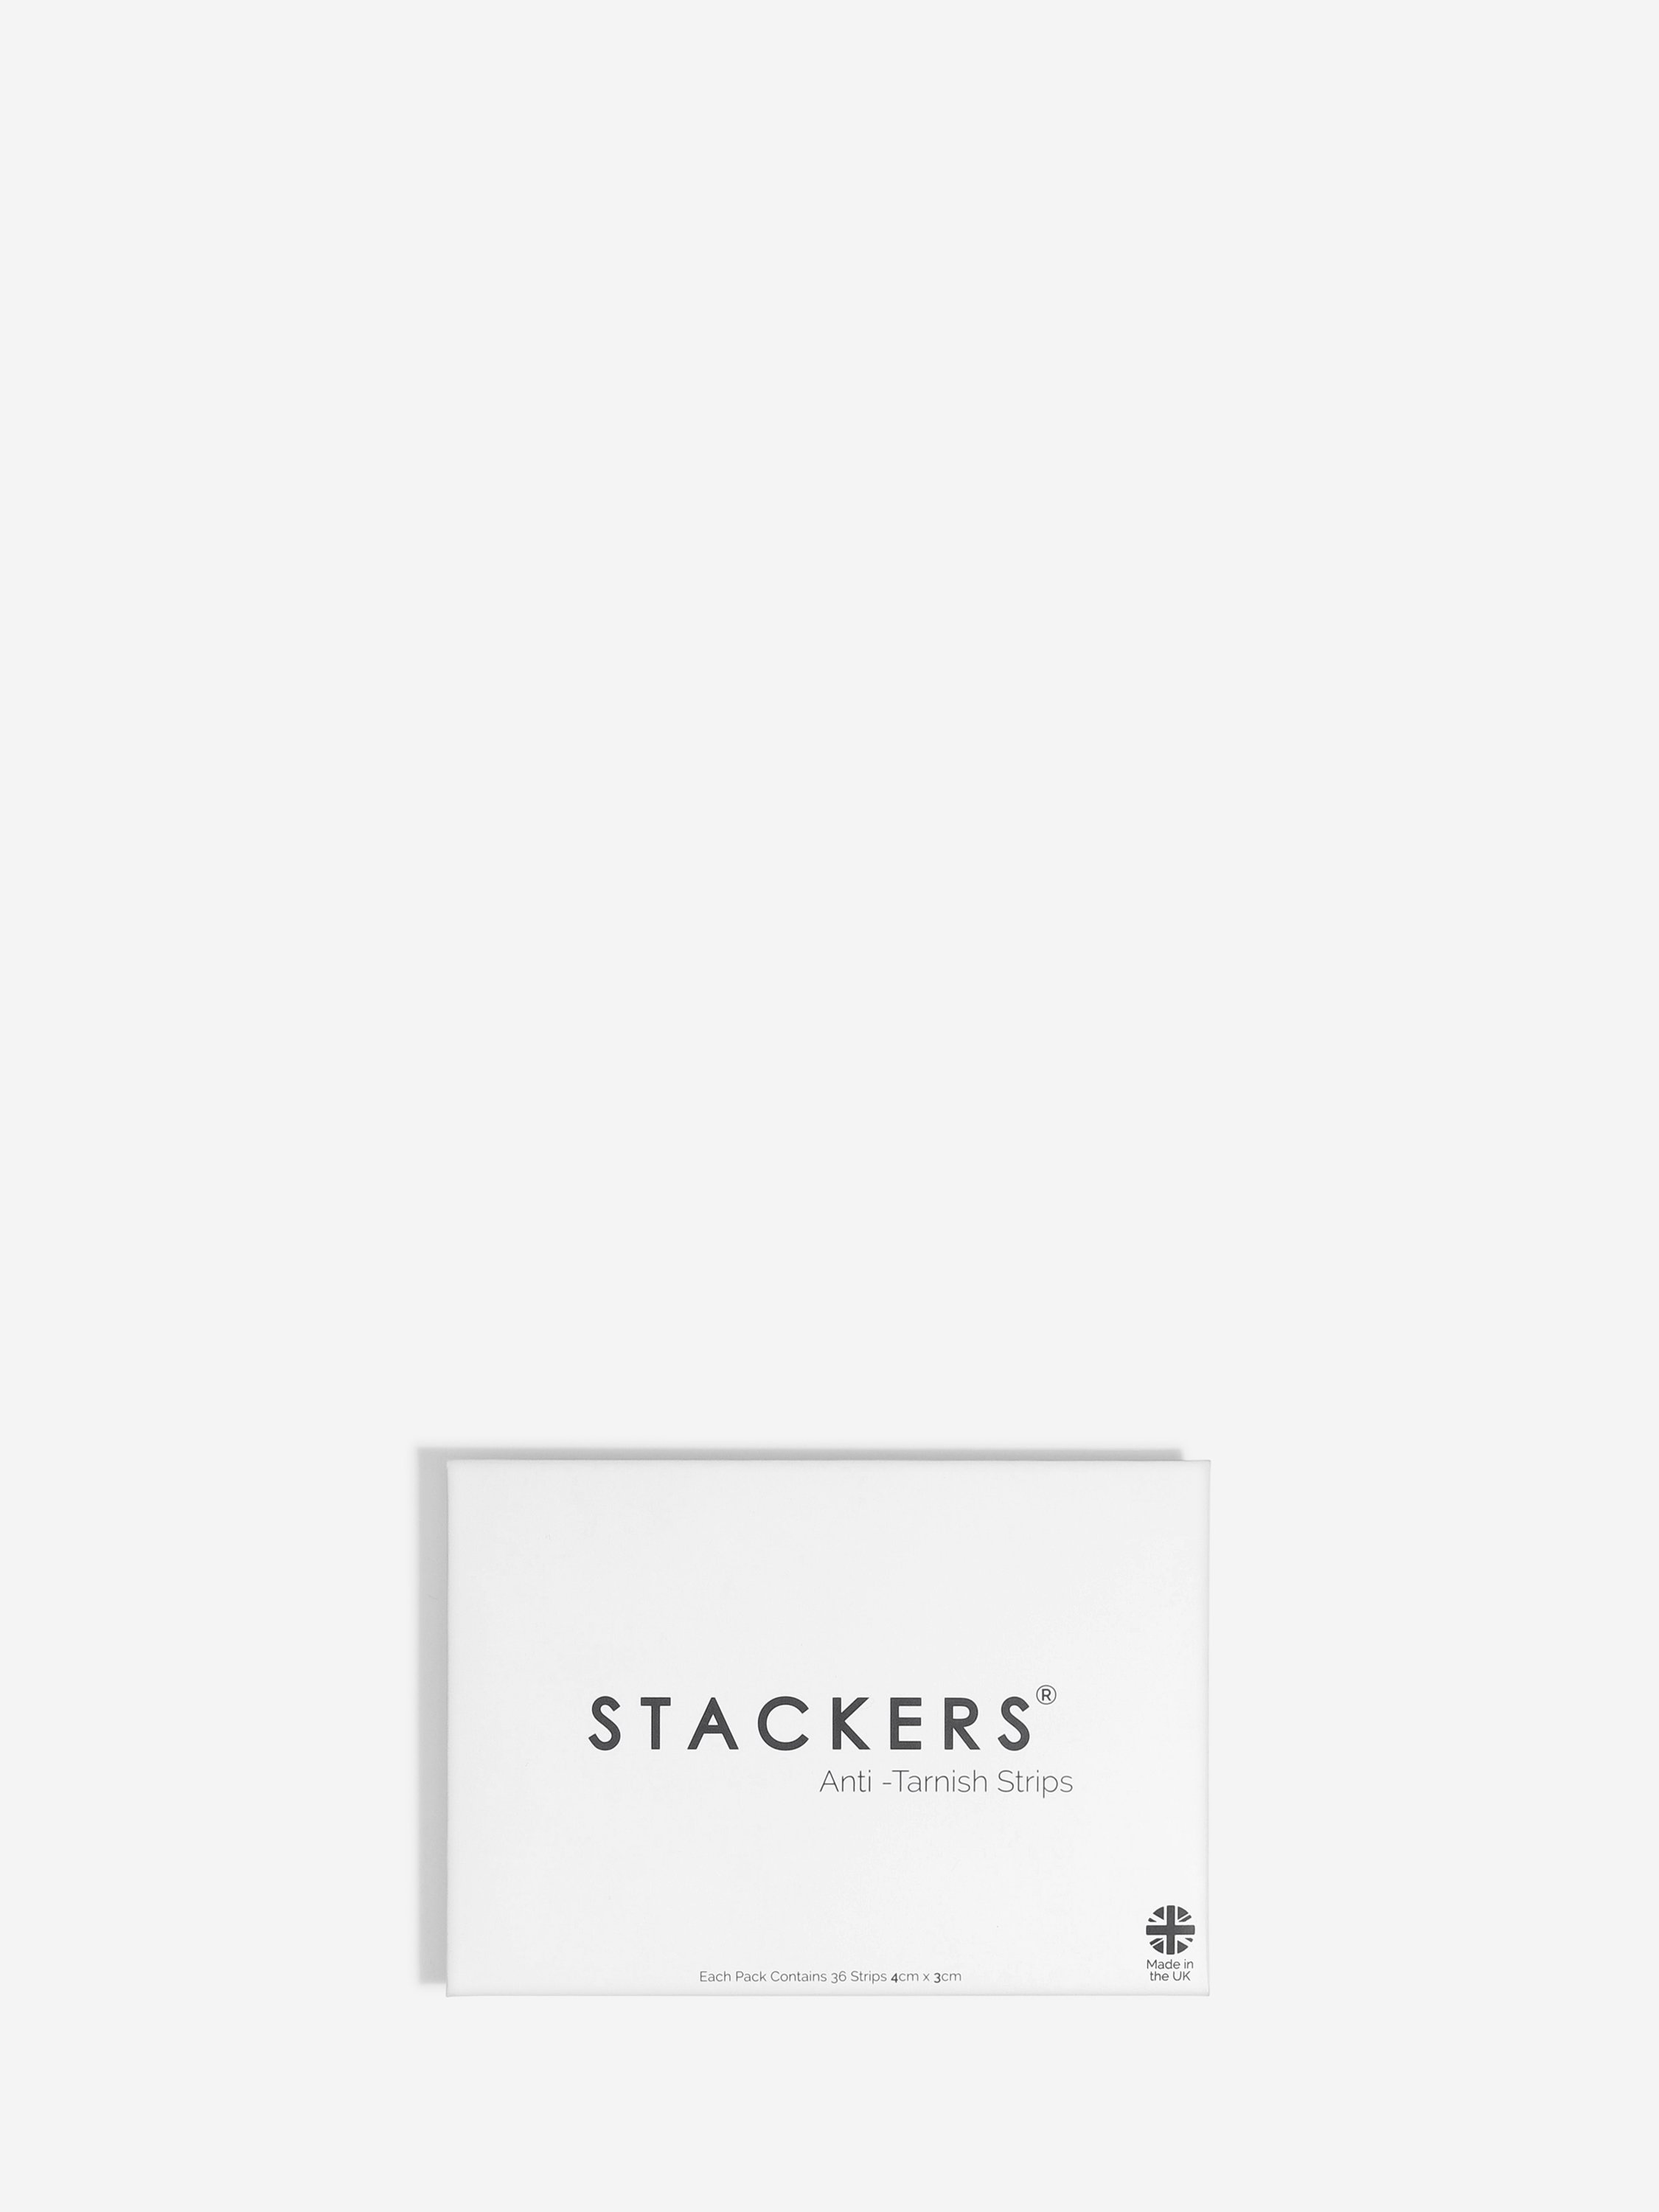 Stackers Anti-Tarnish Strips